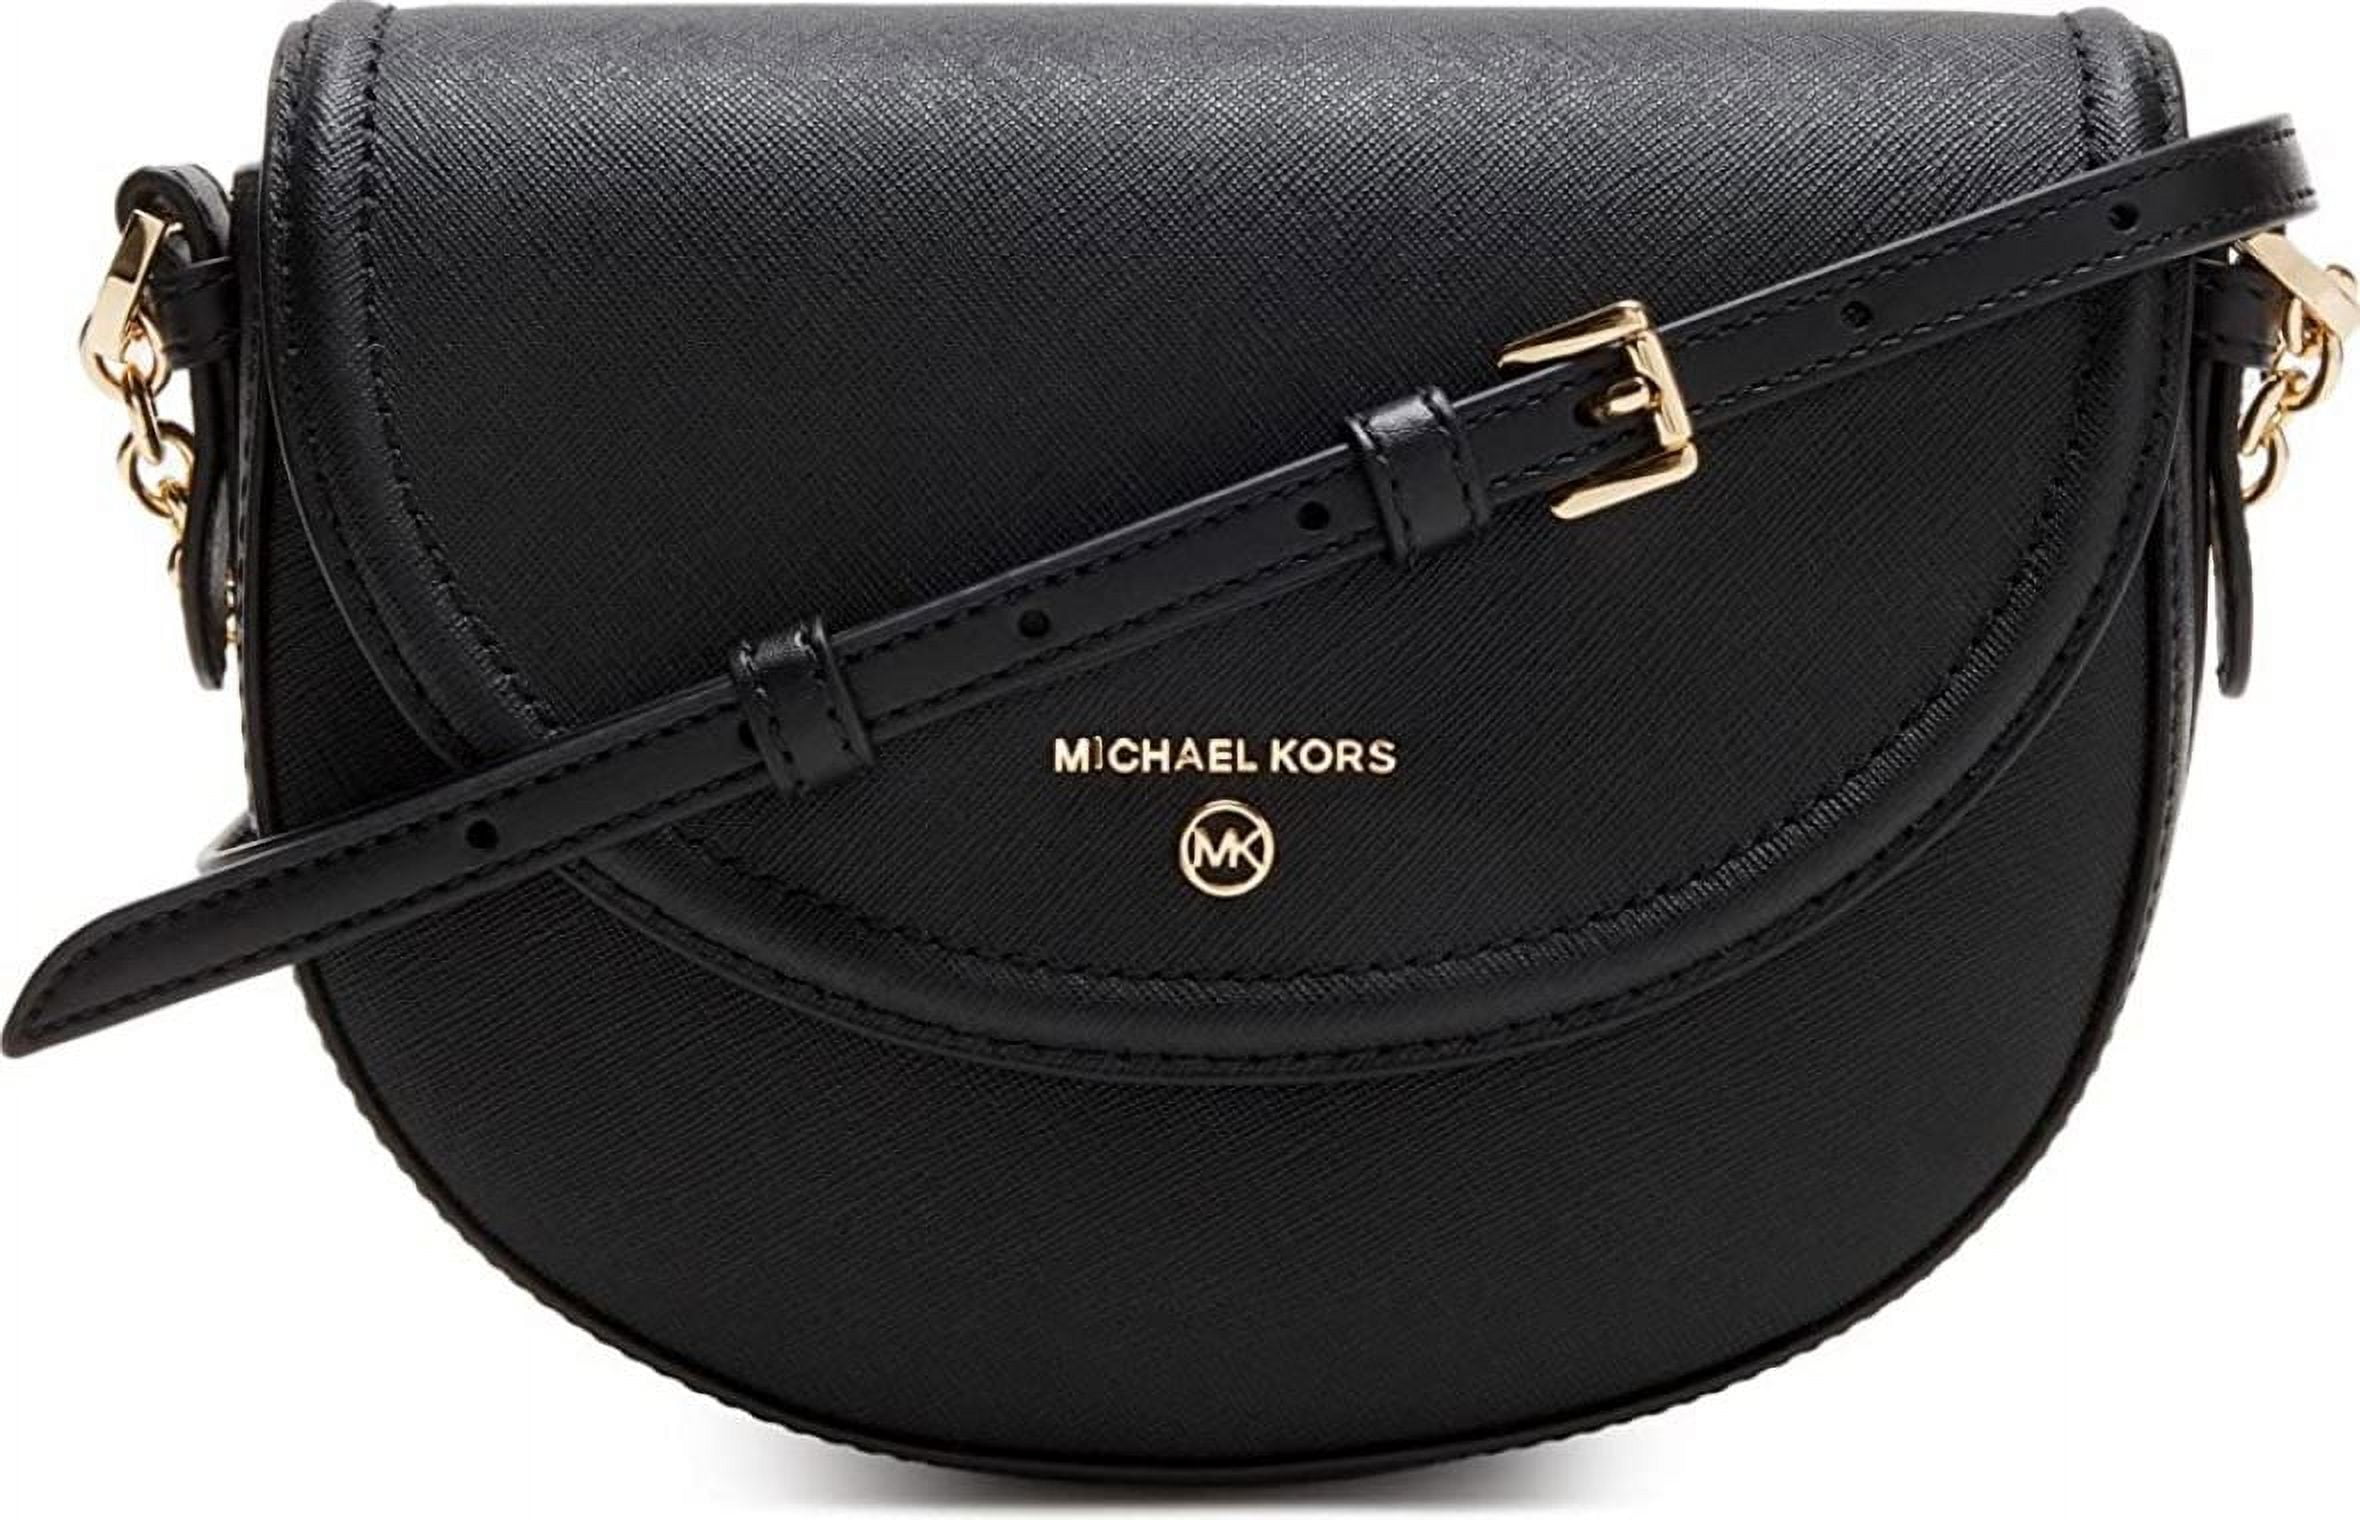 MICHAEL KORS Crossbody bag in 001 black